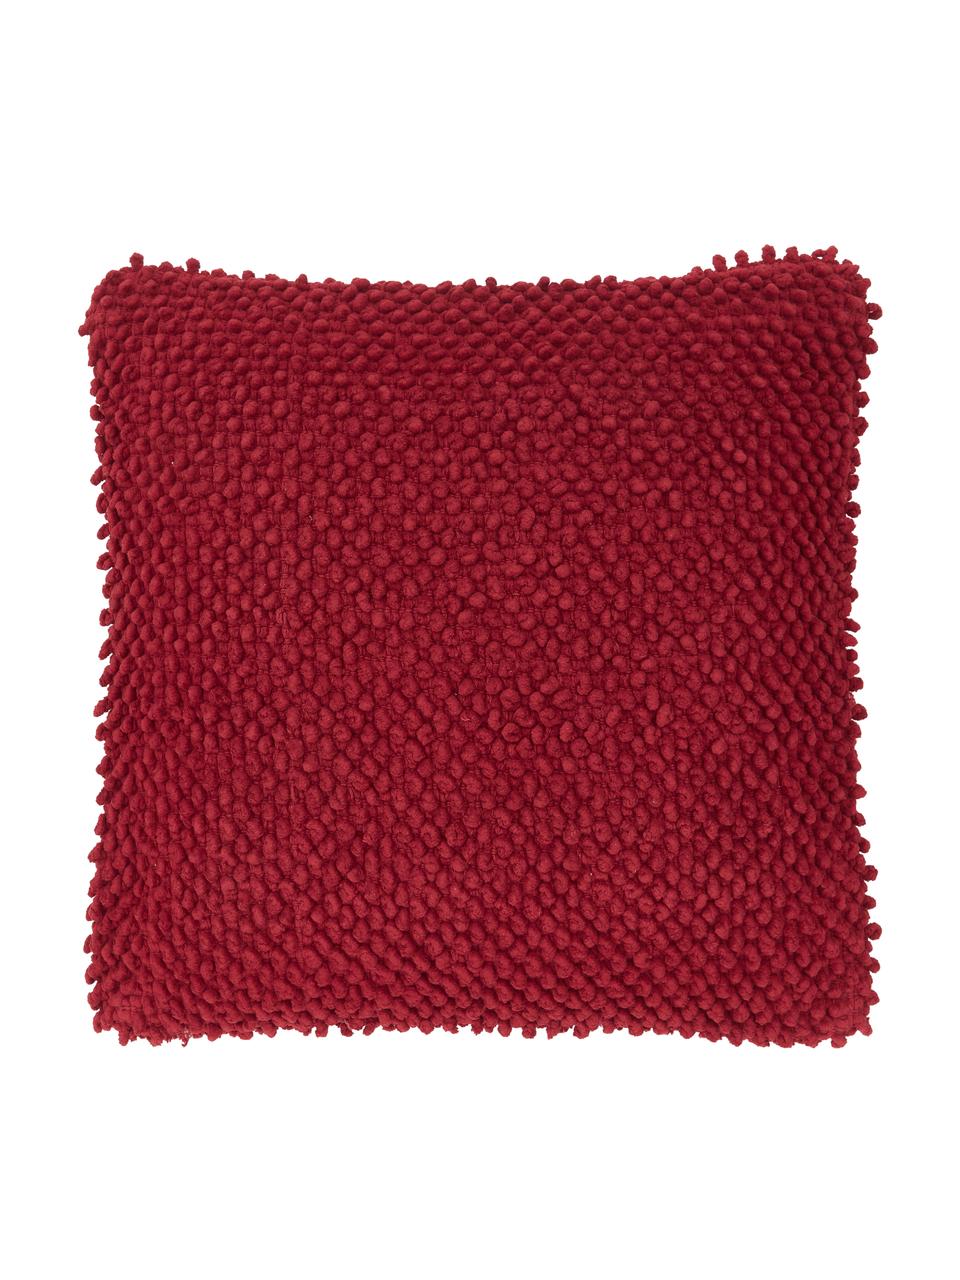 Federa arredo color rosso scuro con superficie strutturata Indi, 100% cotone, Rosso scuro, Larg. 45 x Lung. 45 cm